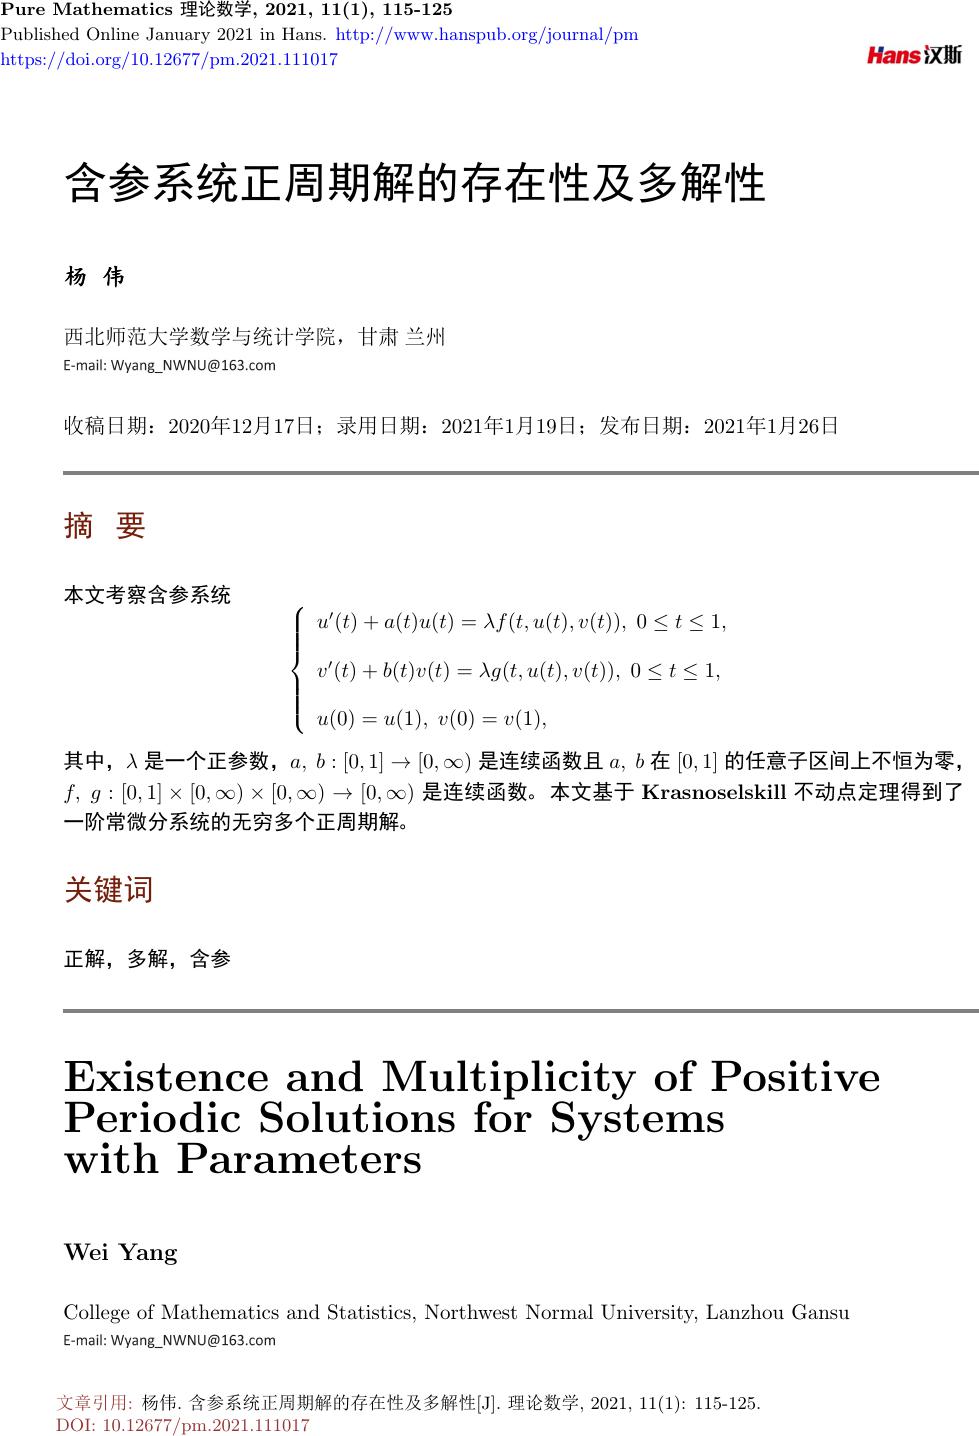 含参系统正周期解的存在性及多解性 Existence And Multiplicity Of Positive Periodic Solutions For Systemswith Parameters